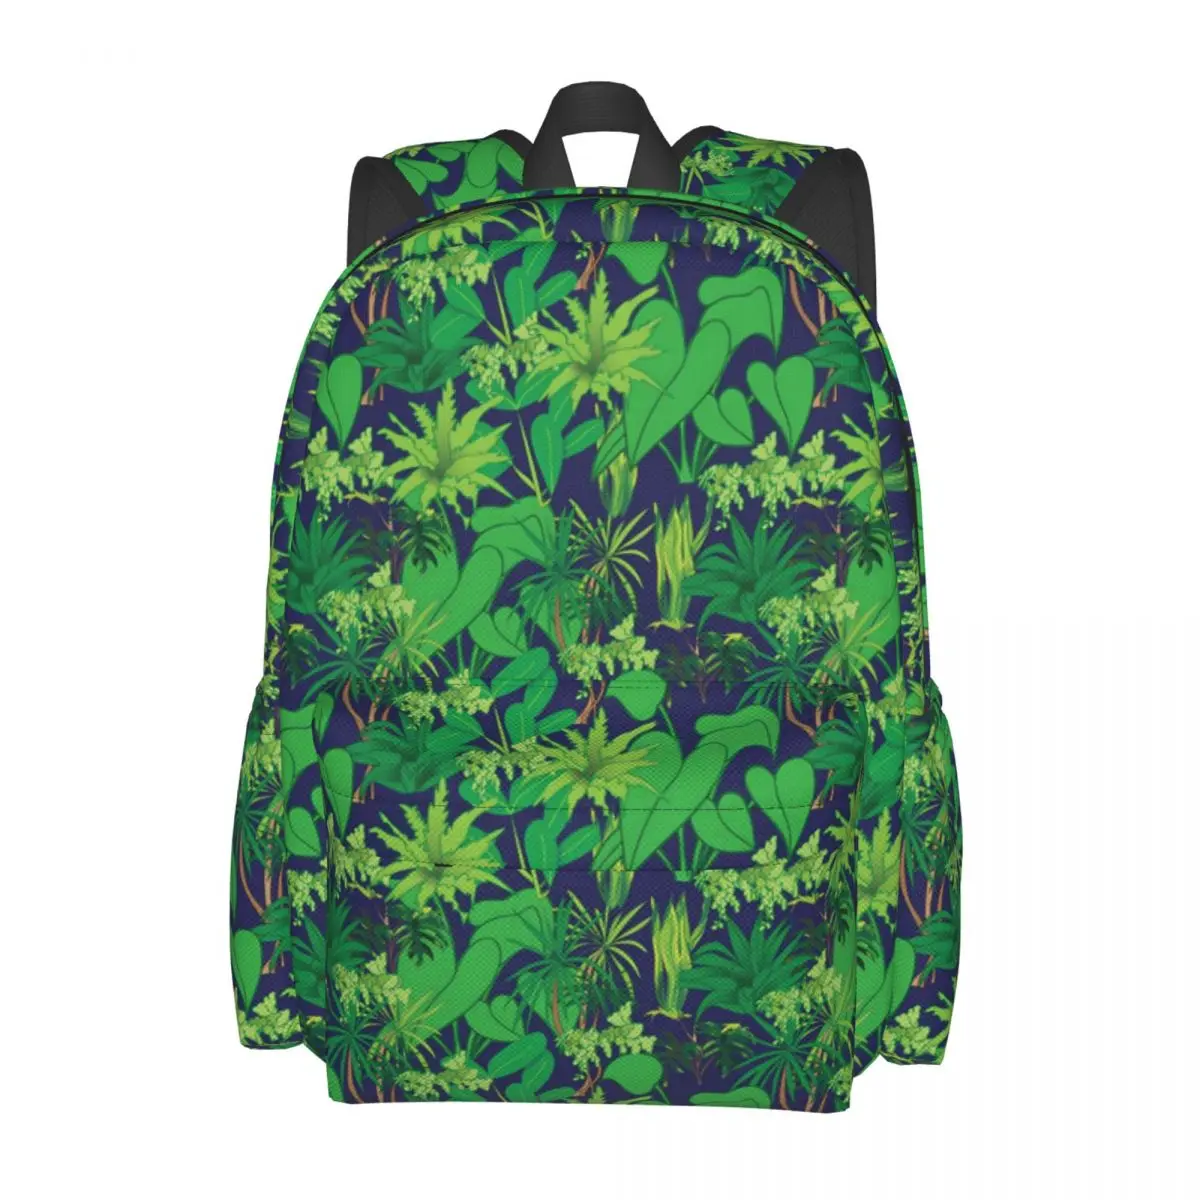 

Женский рюкзак из полиэстера, с принтом зеленых листьев